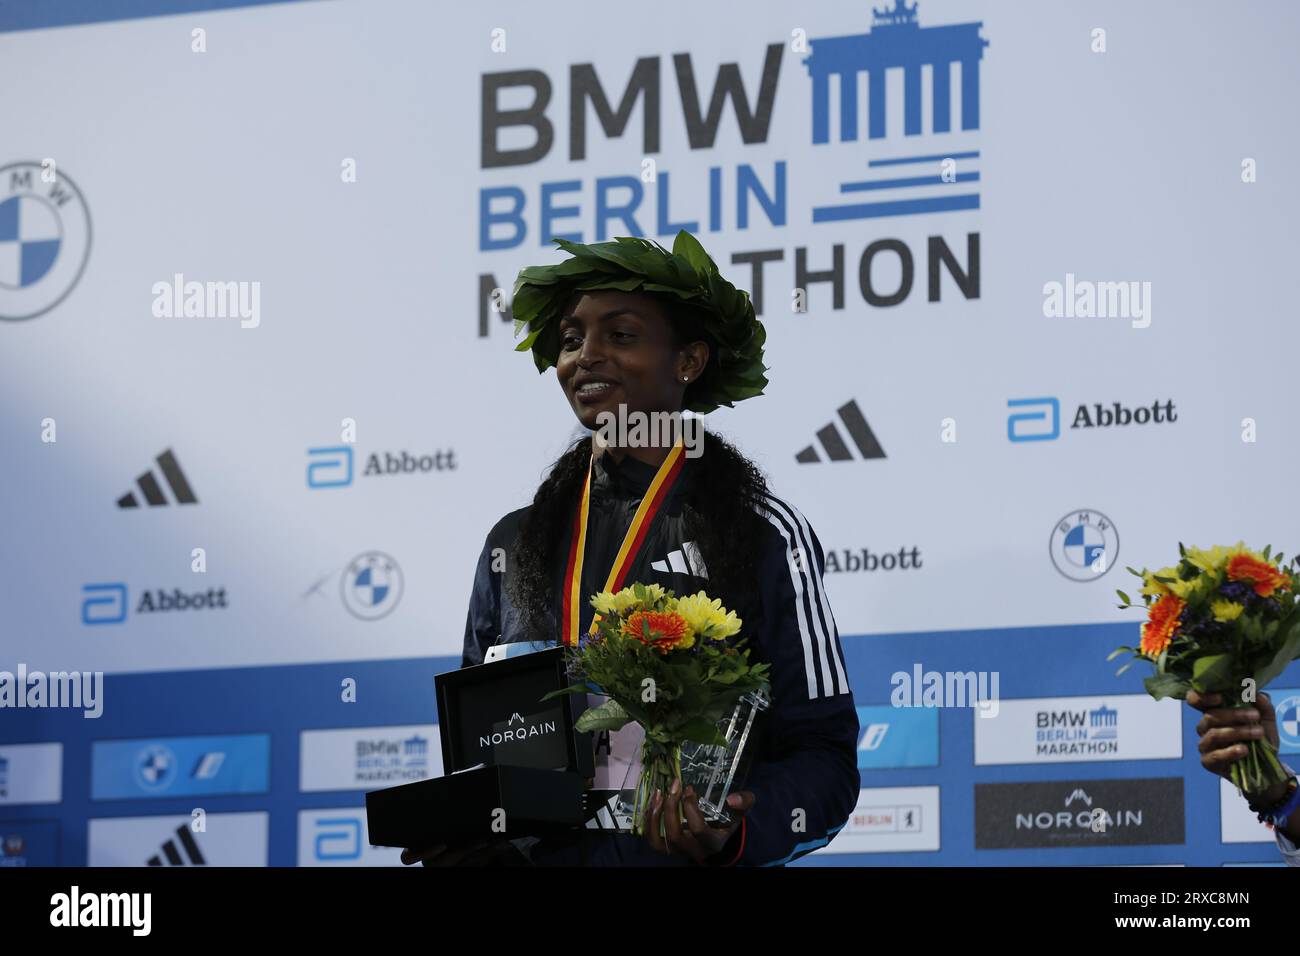 24/09/2023, Berlino, Germania. Tigst Assefa alla cerimonia di premiazione. Tigst Assefa dall'Etiopia corre un favoloso record del mondo e vince la 49a maratona di Berlino femminile in 2:11:53 ore. Il secondo posto è andato allo Sheila CHEPKIRUI dal Kenya con 2:17:49 ore e il terzo posto è stato vinto da Magdalena Shauri dalla Tanzania con 02:18:43 ore. Sven Sstruck / Alamy Live News Sven Sstruck / Alamy Live News Foto Stock